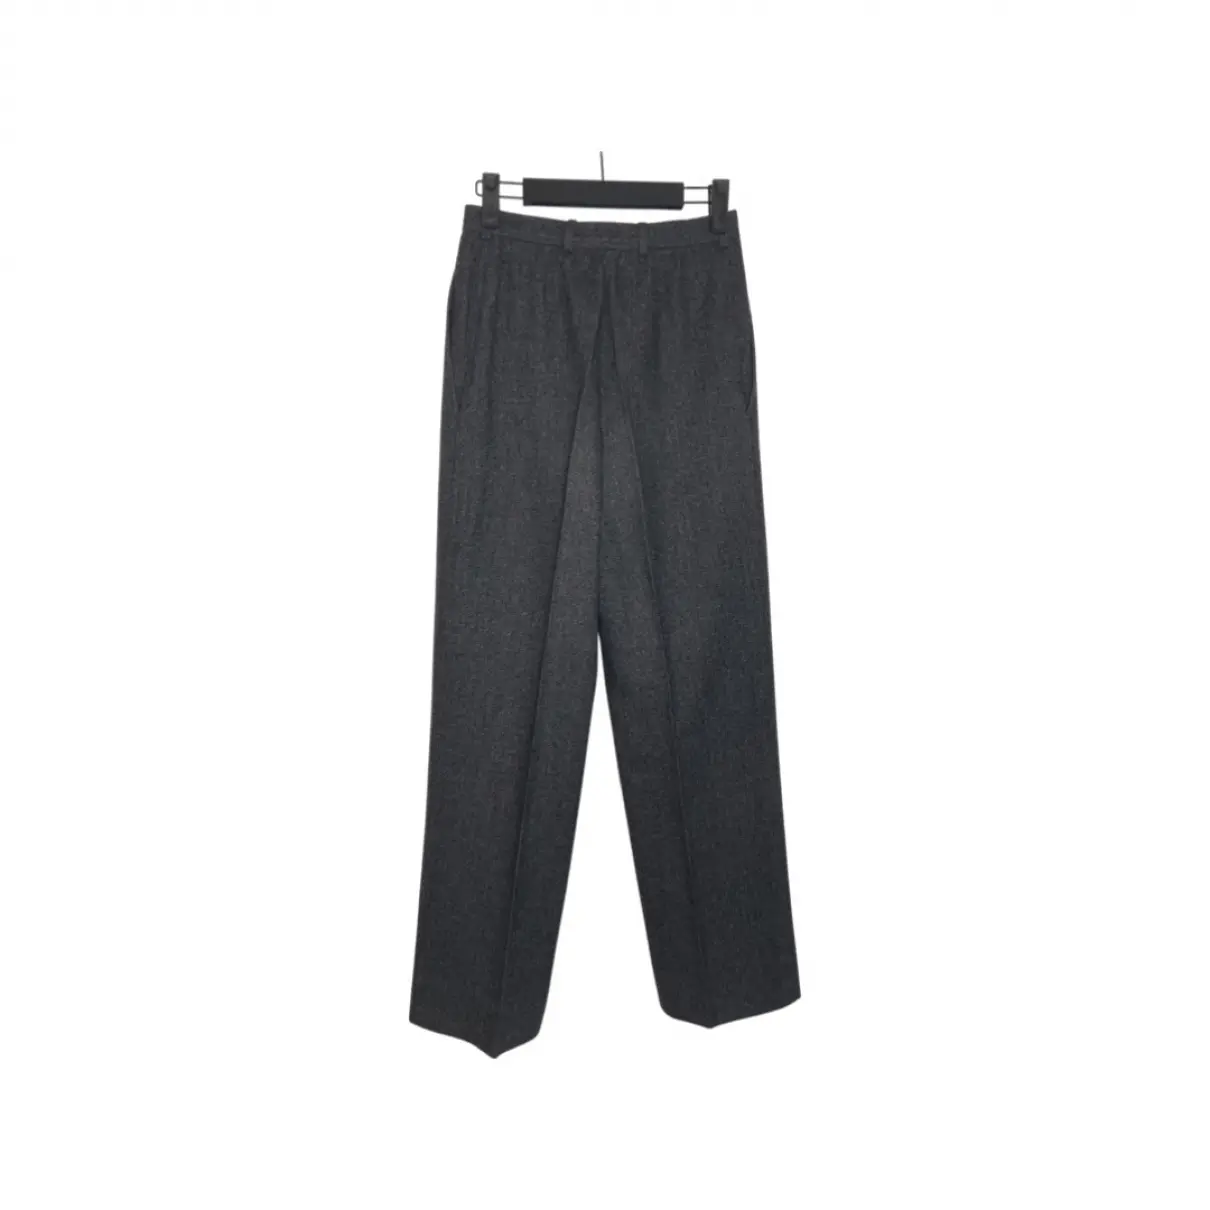 Buy Yves Saint Laurent Wool trousers online - Vintage